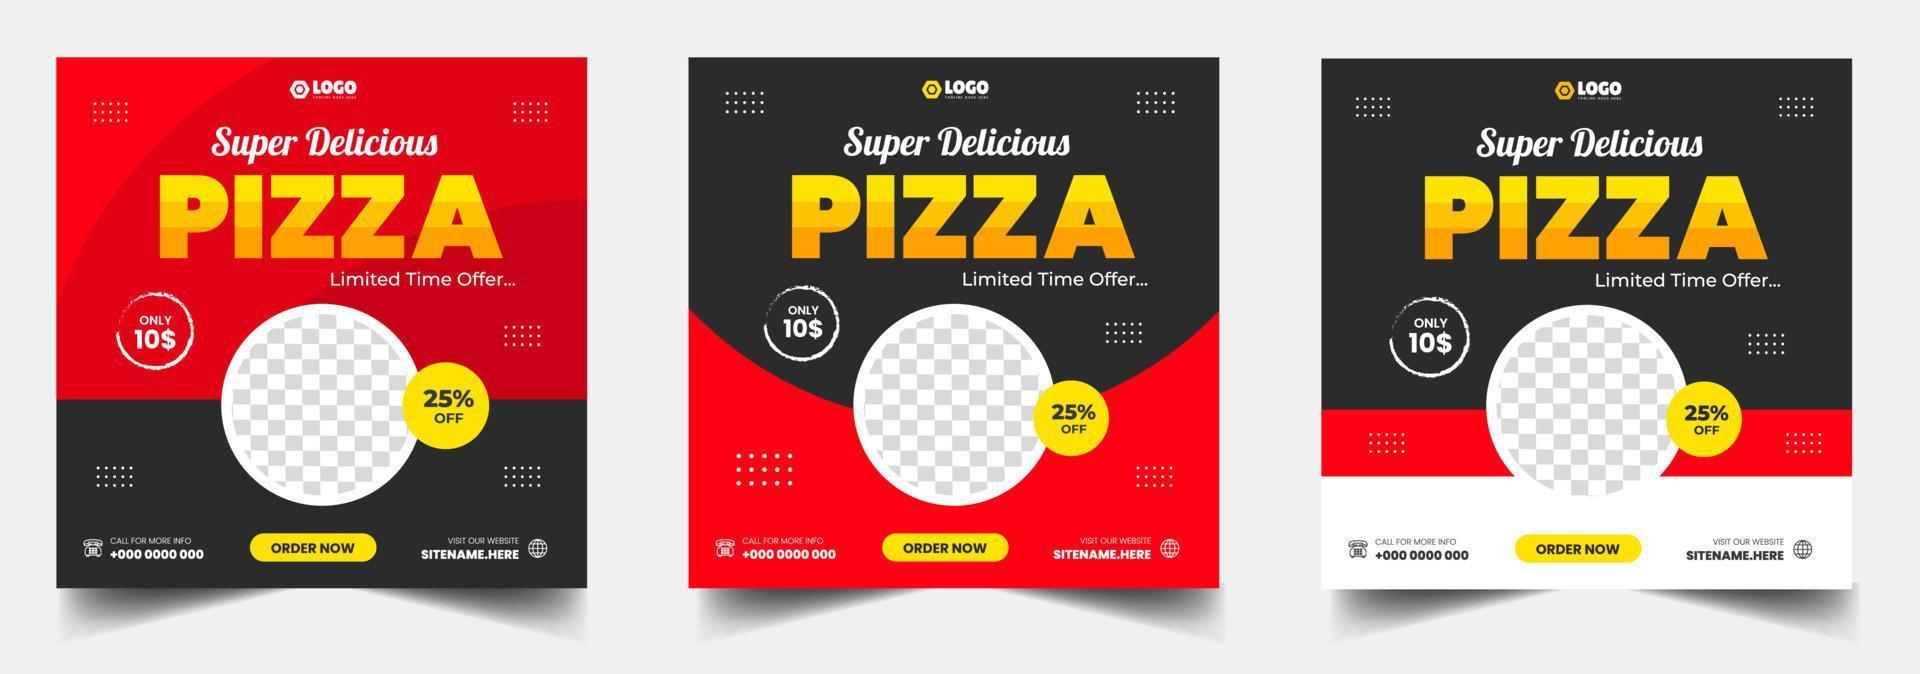 Banner de publicación de pizza en redes sociales. delicioso menú de hamburguesas y pizzas diseño de banner web de promoción de publicaciones en redes sociales. vector